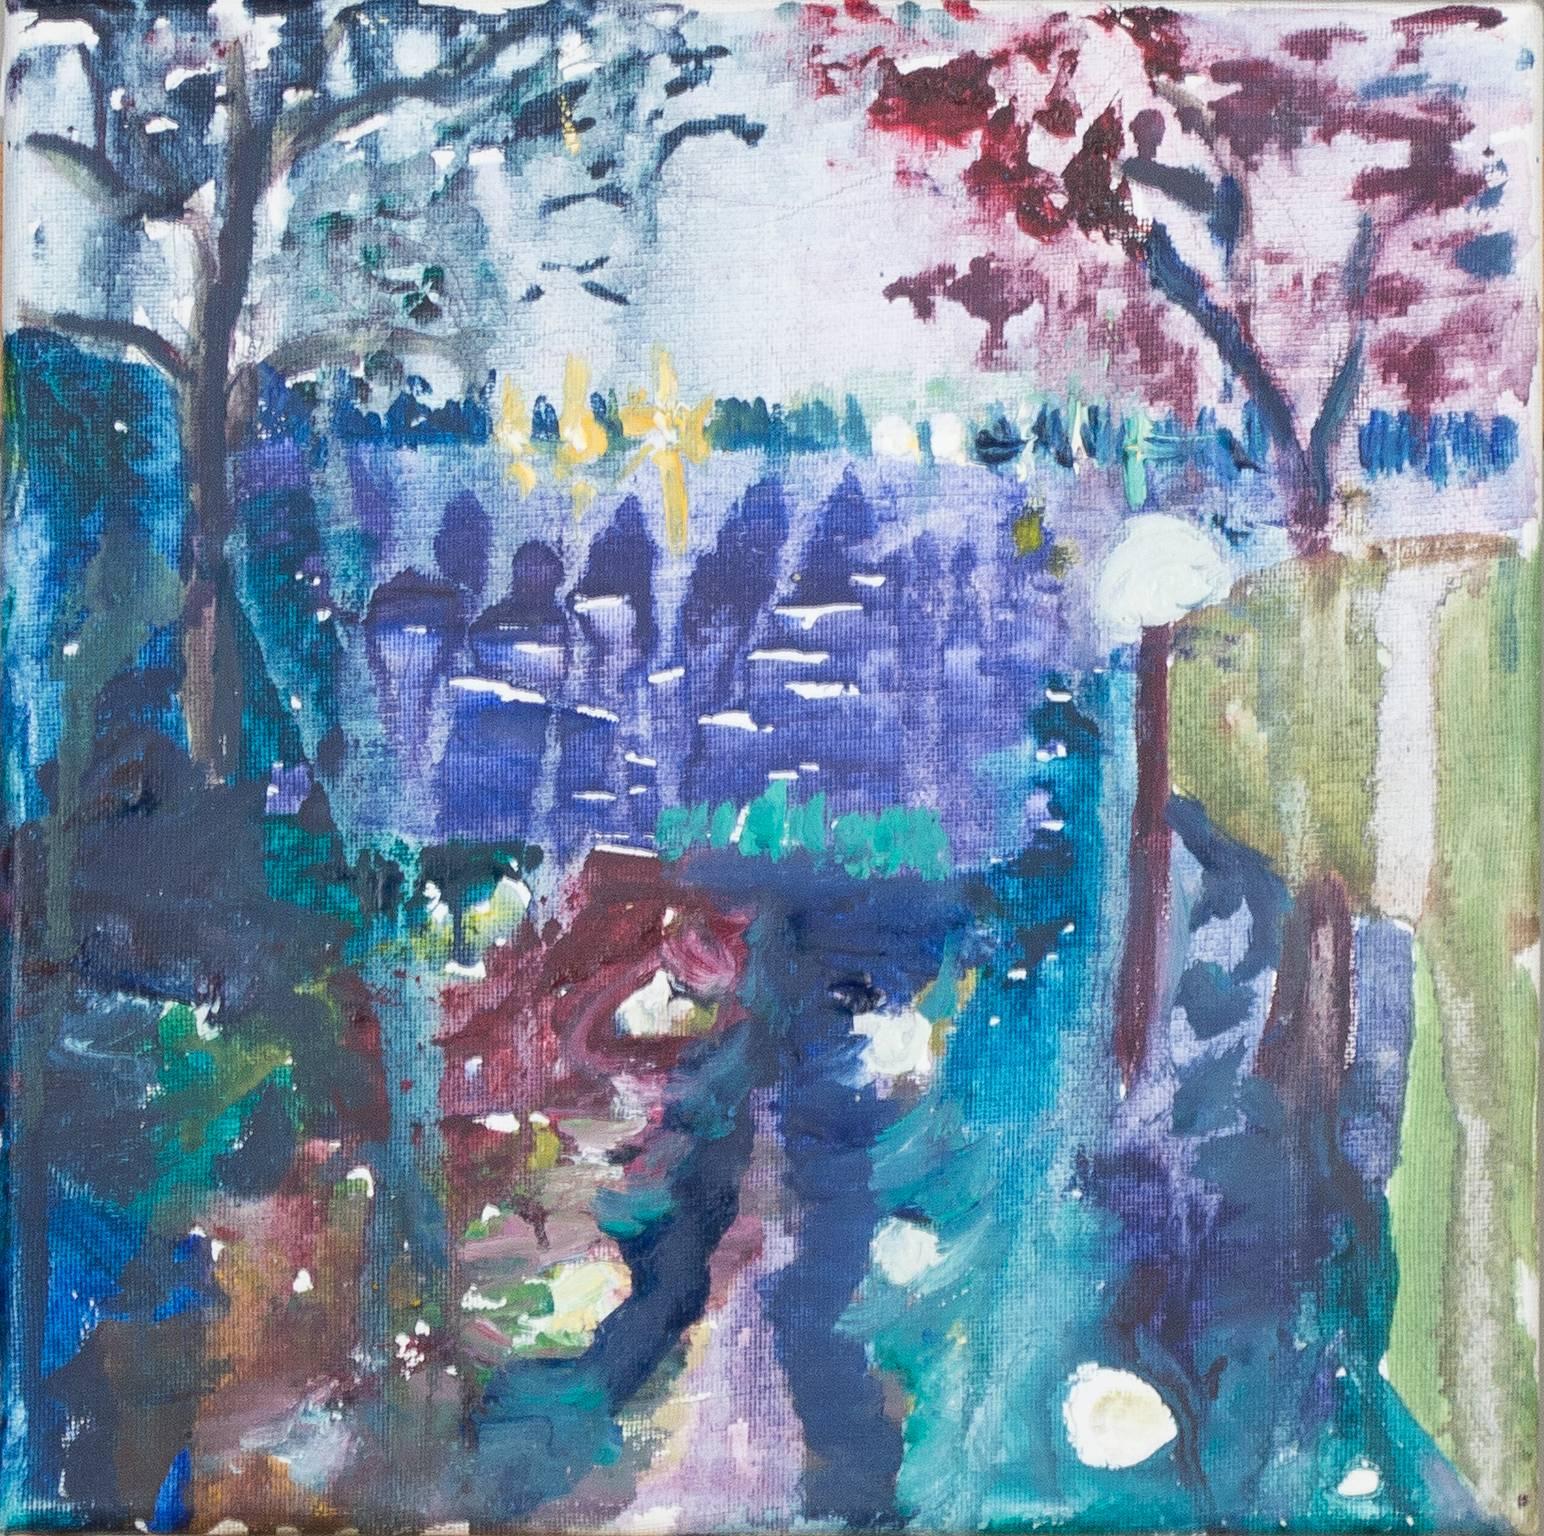 "La lumière au bout du tunnel" est une peinture originale à l'huile à base d'eau sur toile de Helen Hulsey. L'artiste a signé l'œuvre au dos. Helen Hulsey est connue pour ses paysages lumineux et irisés. Ici, la perspective linéaire attire l'œil du